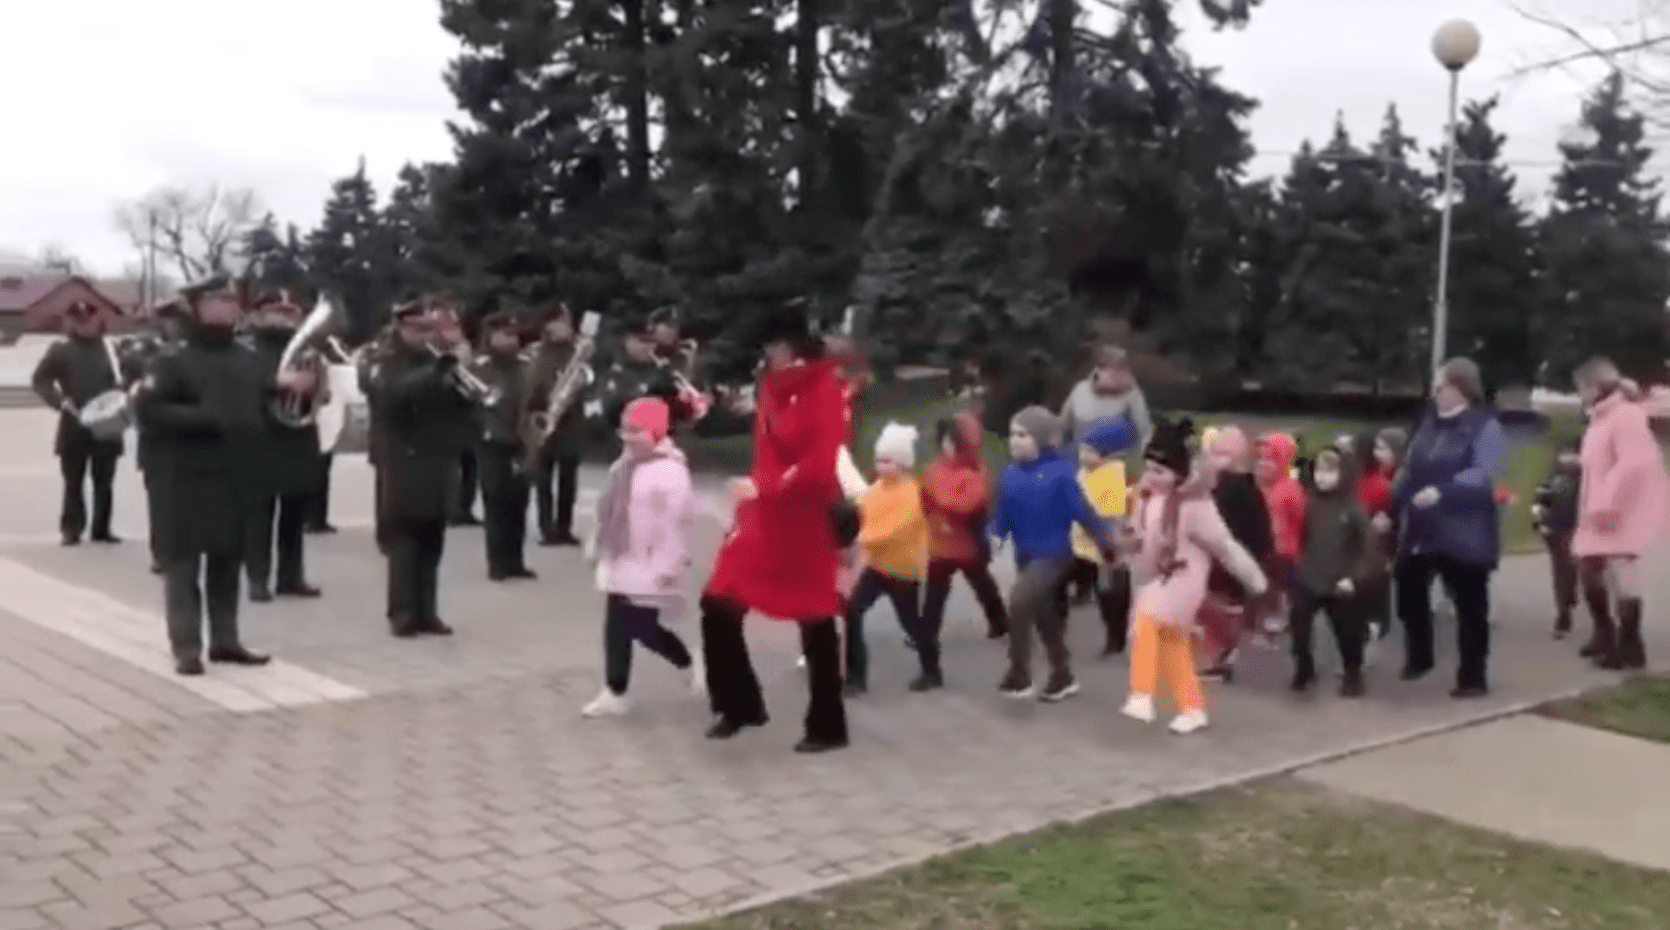 Nazionalismo putiniano: i bambini si addestrano per una parata militare in attesa delle divise